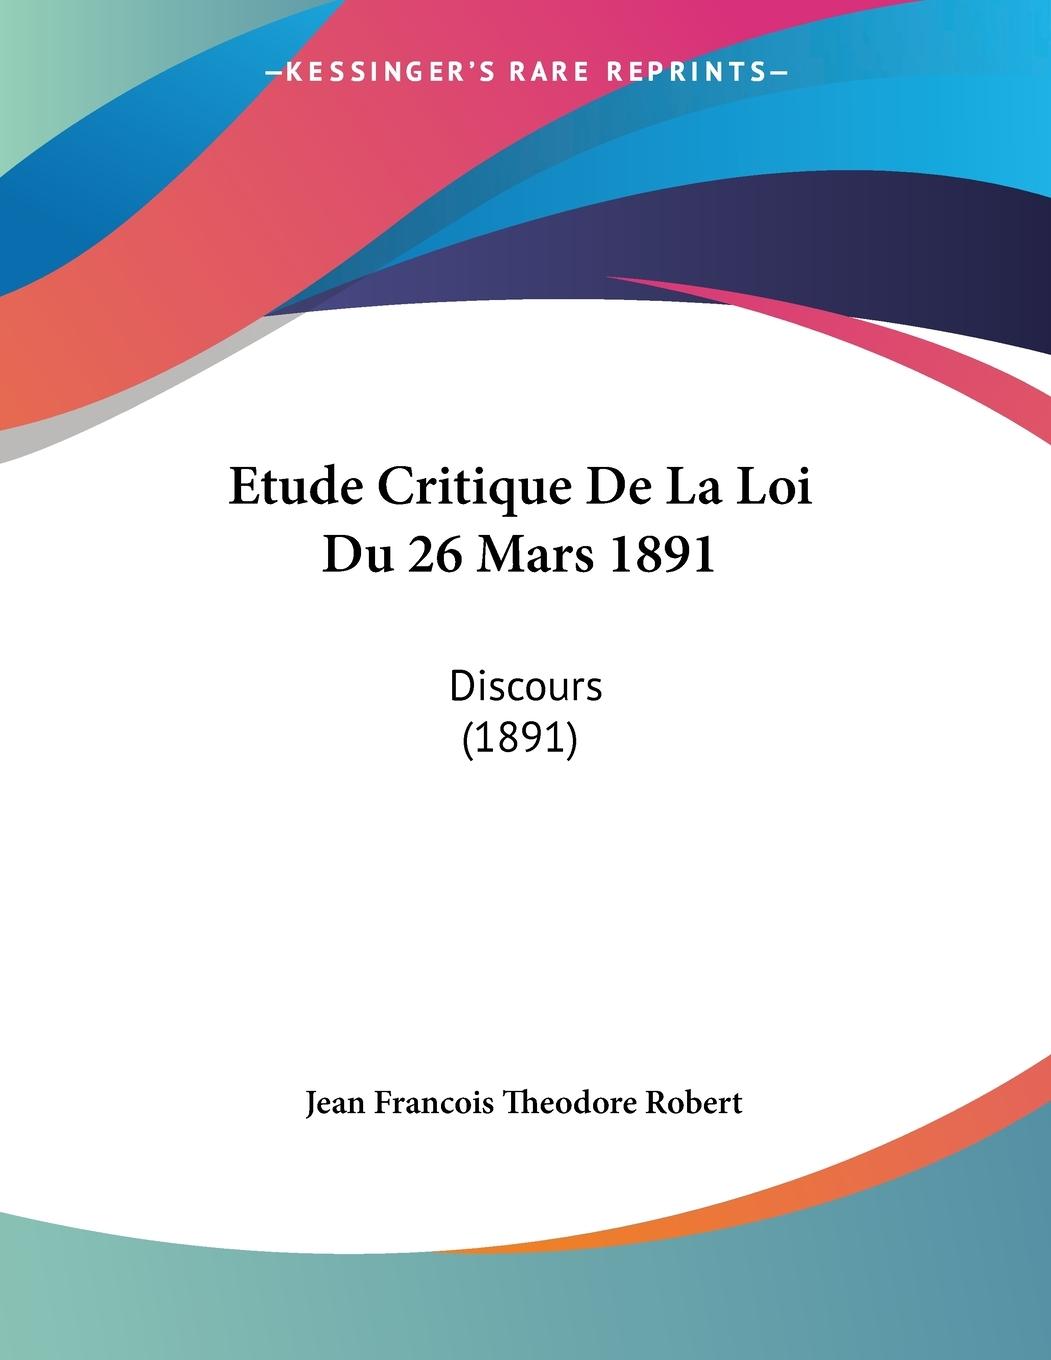 Etude Critique De La Loi Du 26 Mars 1891 - Robert, Jean Francois Theodore